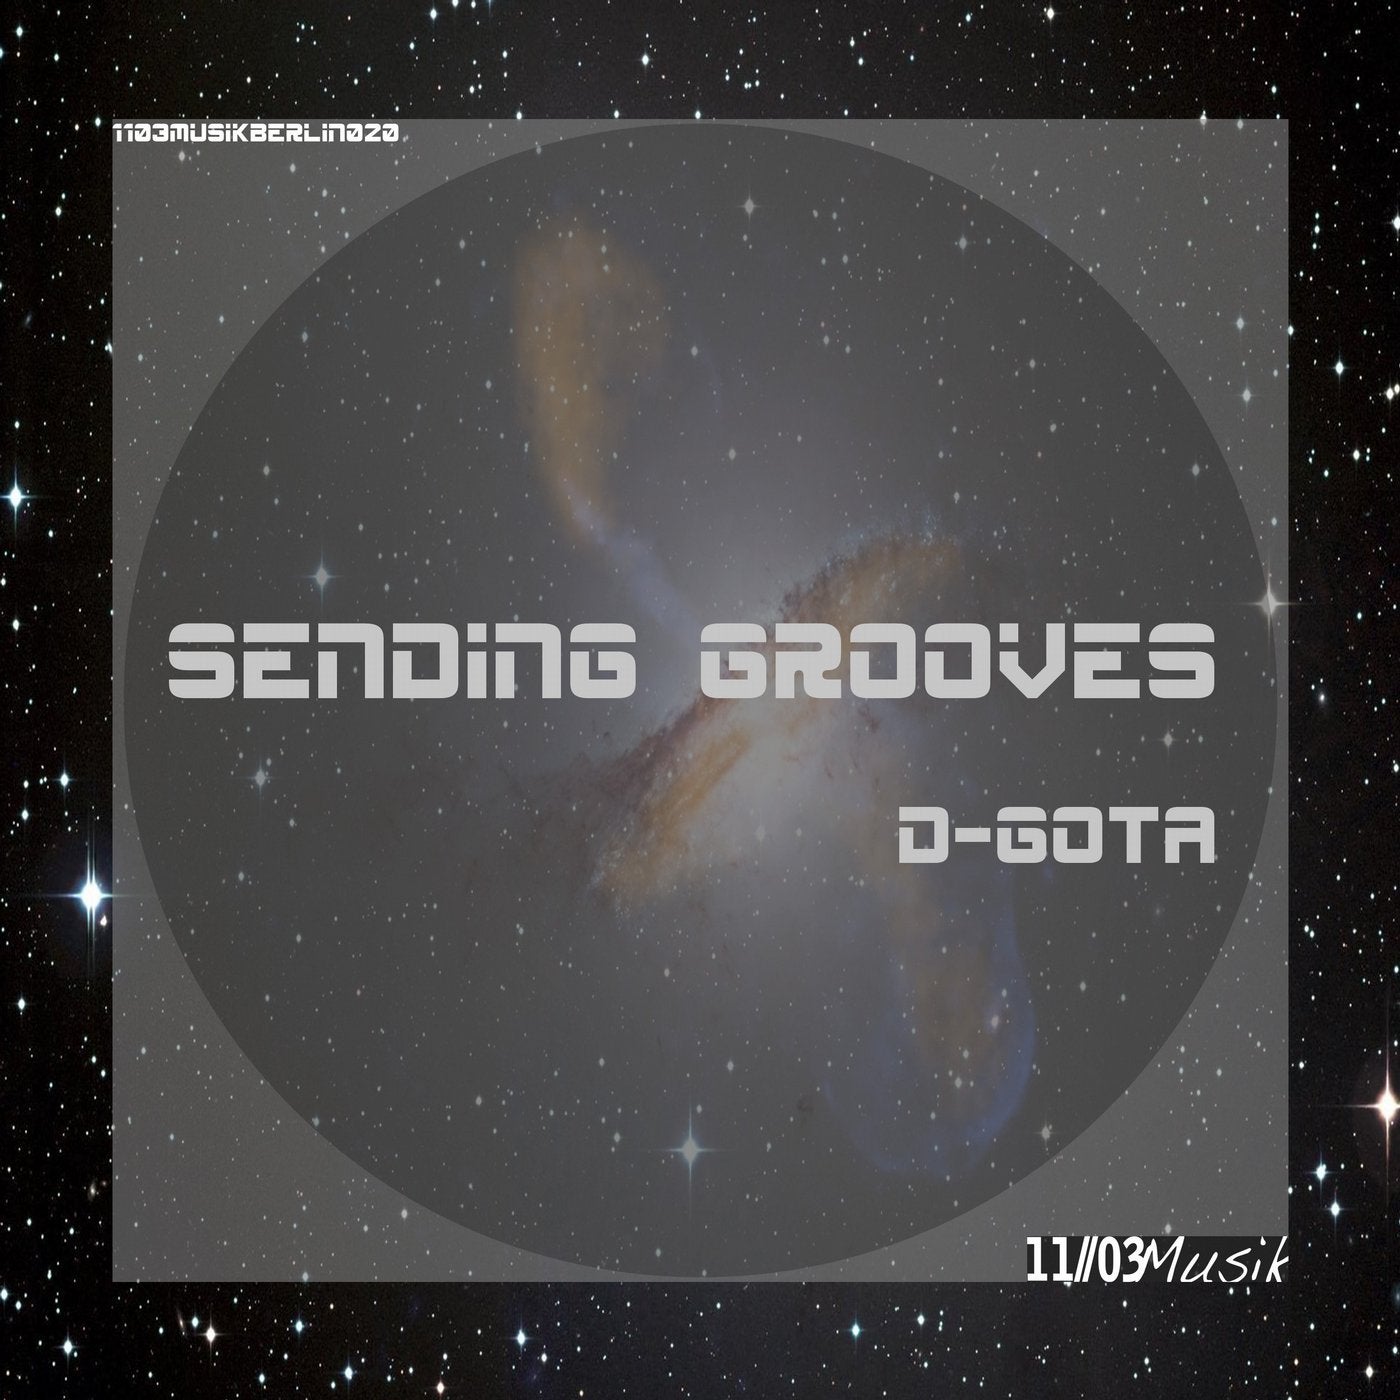 Sending Grooves